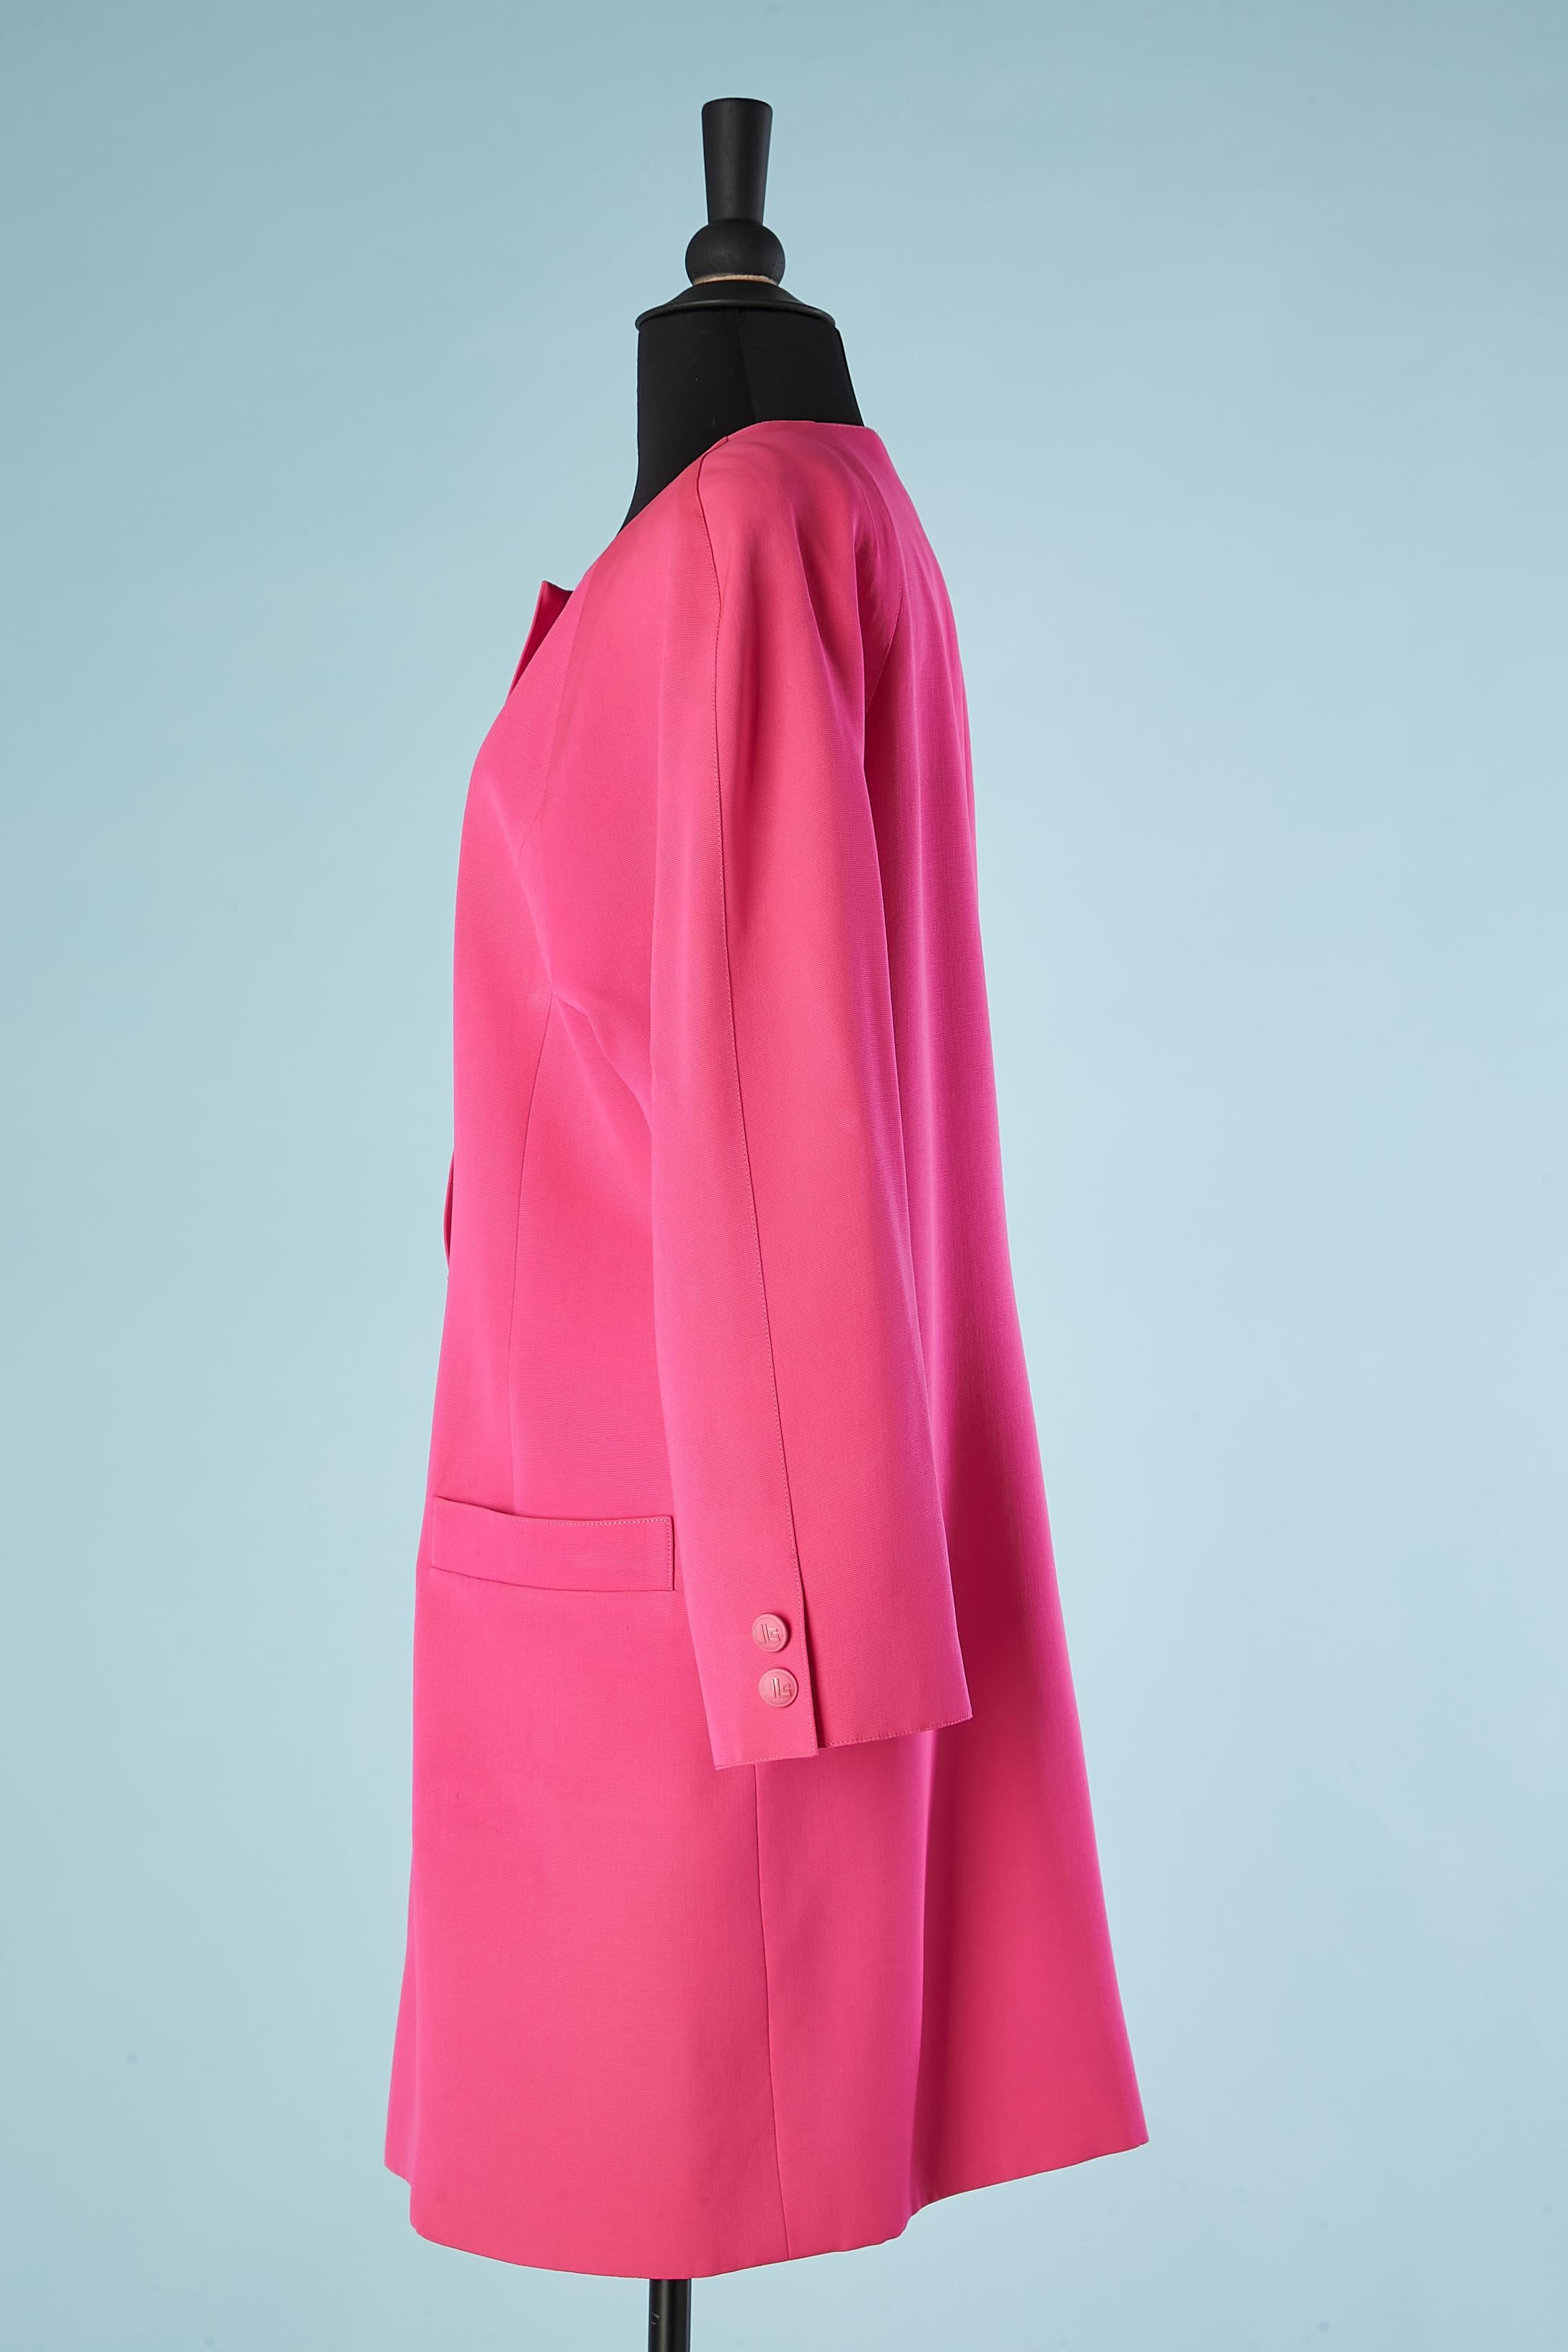 Single-waisted rosa Cocktailjacke mit Markenknöpfen von Scherrer Boutique  Damen im Angebot